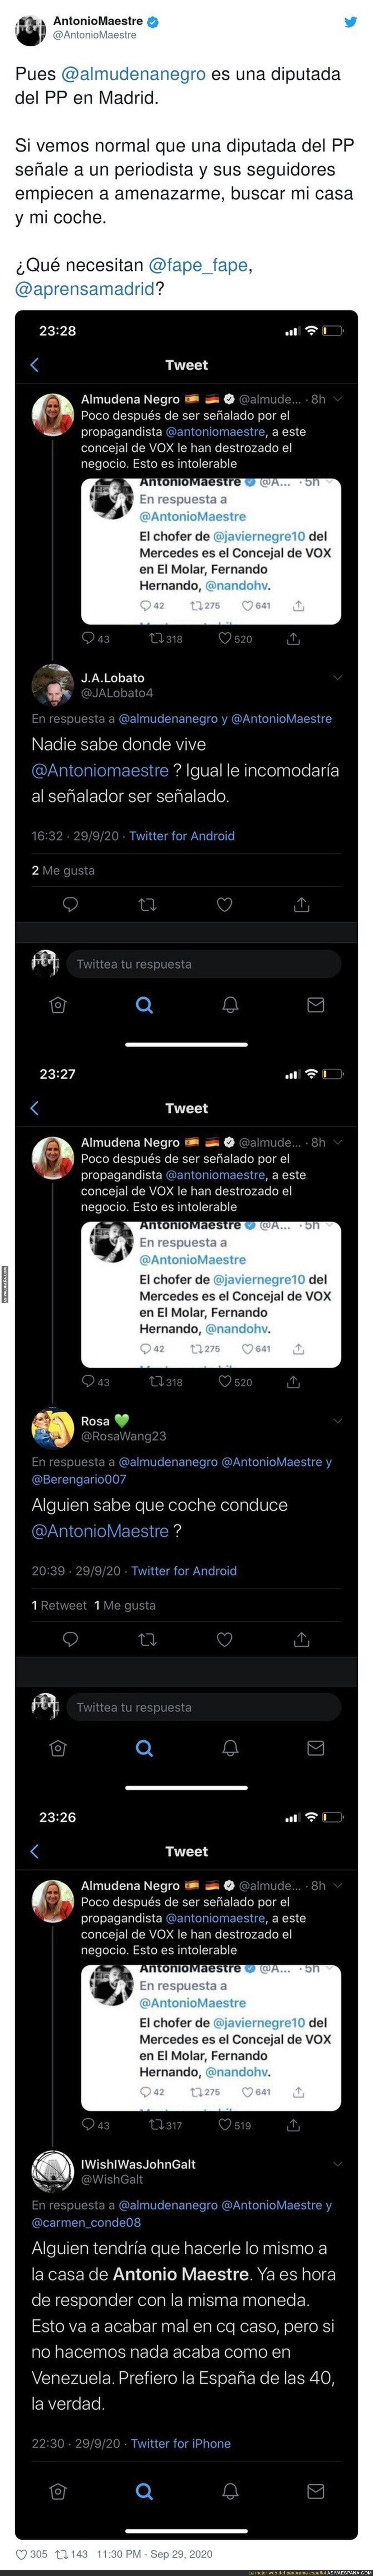 La diputada Almudena Negro señalando a Antonio Maestre en redes sociales